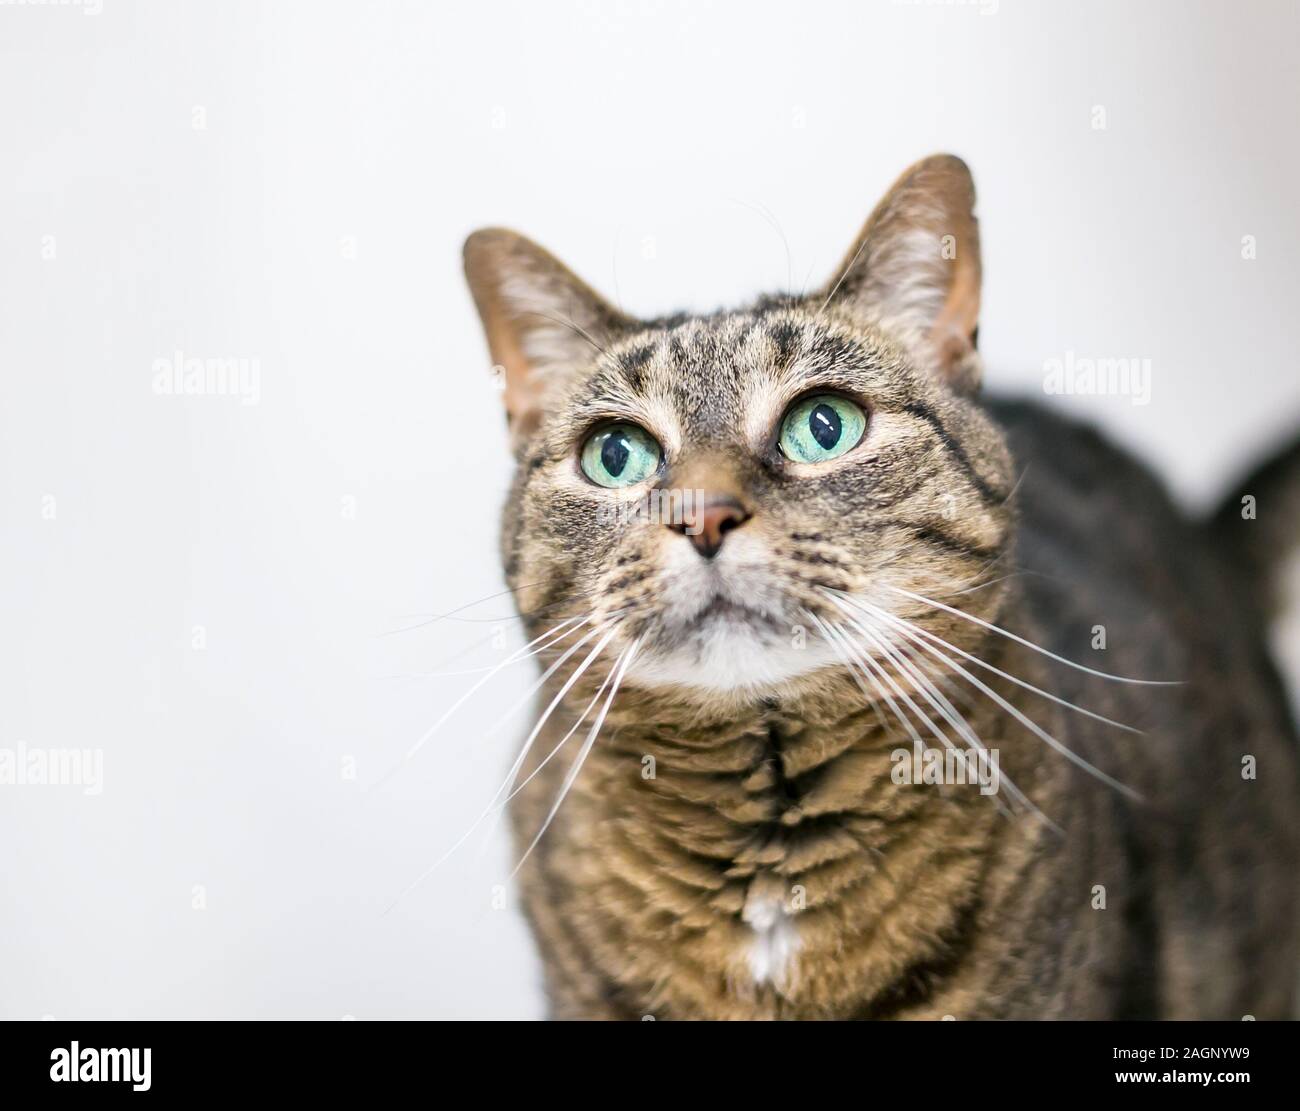 Un chat domestique shorthair tabby brun aux yeux verts, regardant vers le haut Banque D'Images